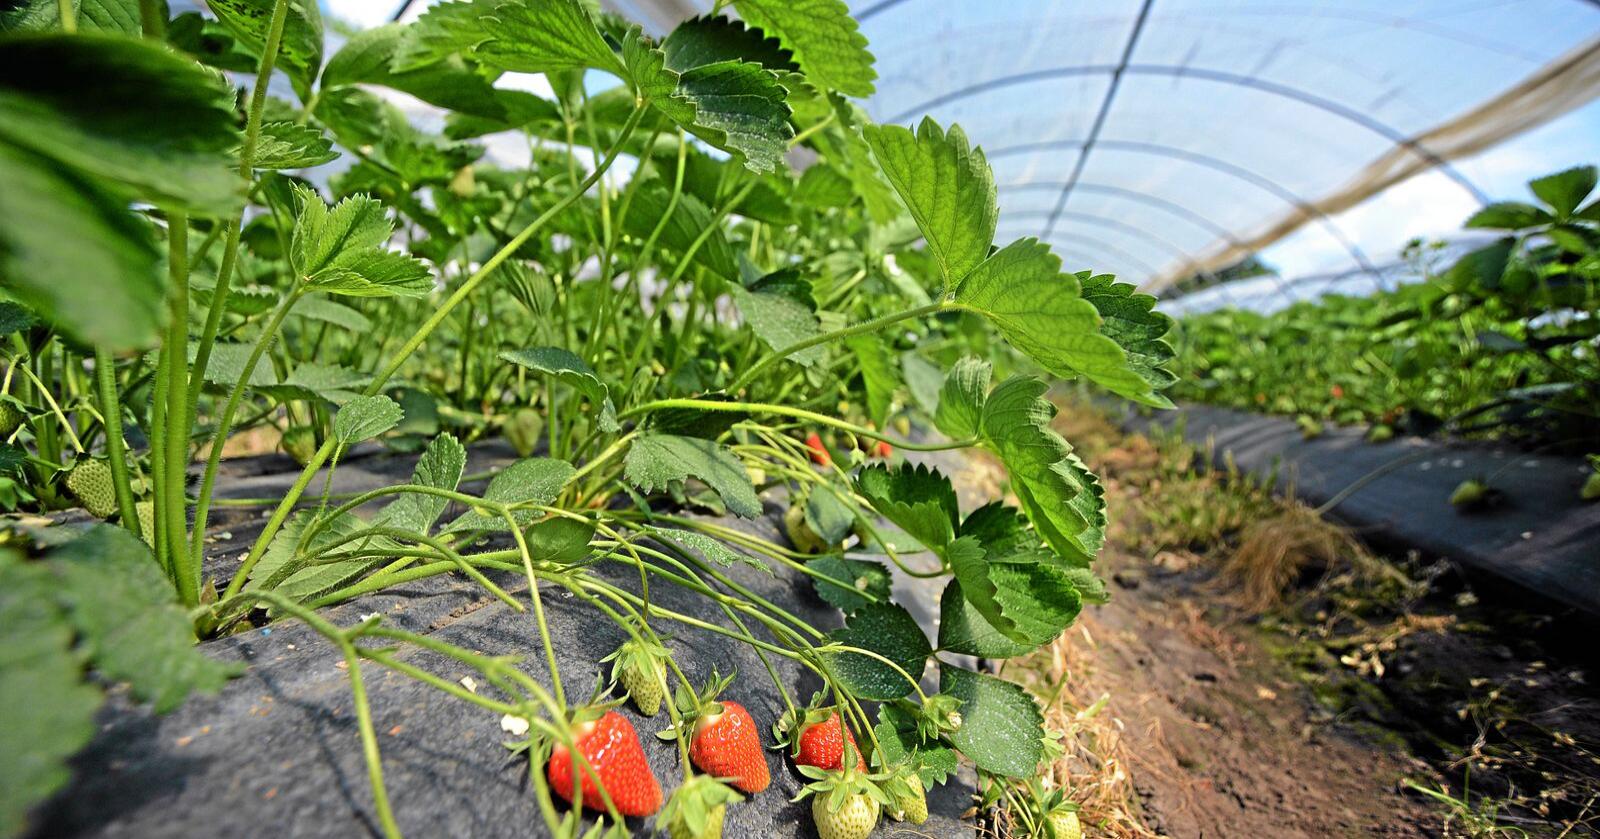 Mange i grøntsektoren, blant annet hos jordbærprodusenter har det vært vanlig med utenlandske sesongarbeidere for å få høsta alle jordbæra. Foto: Siri Juell Rasmussen